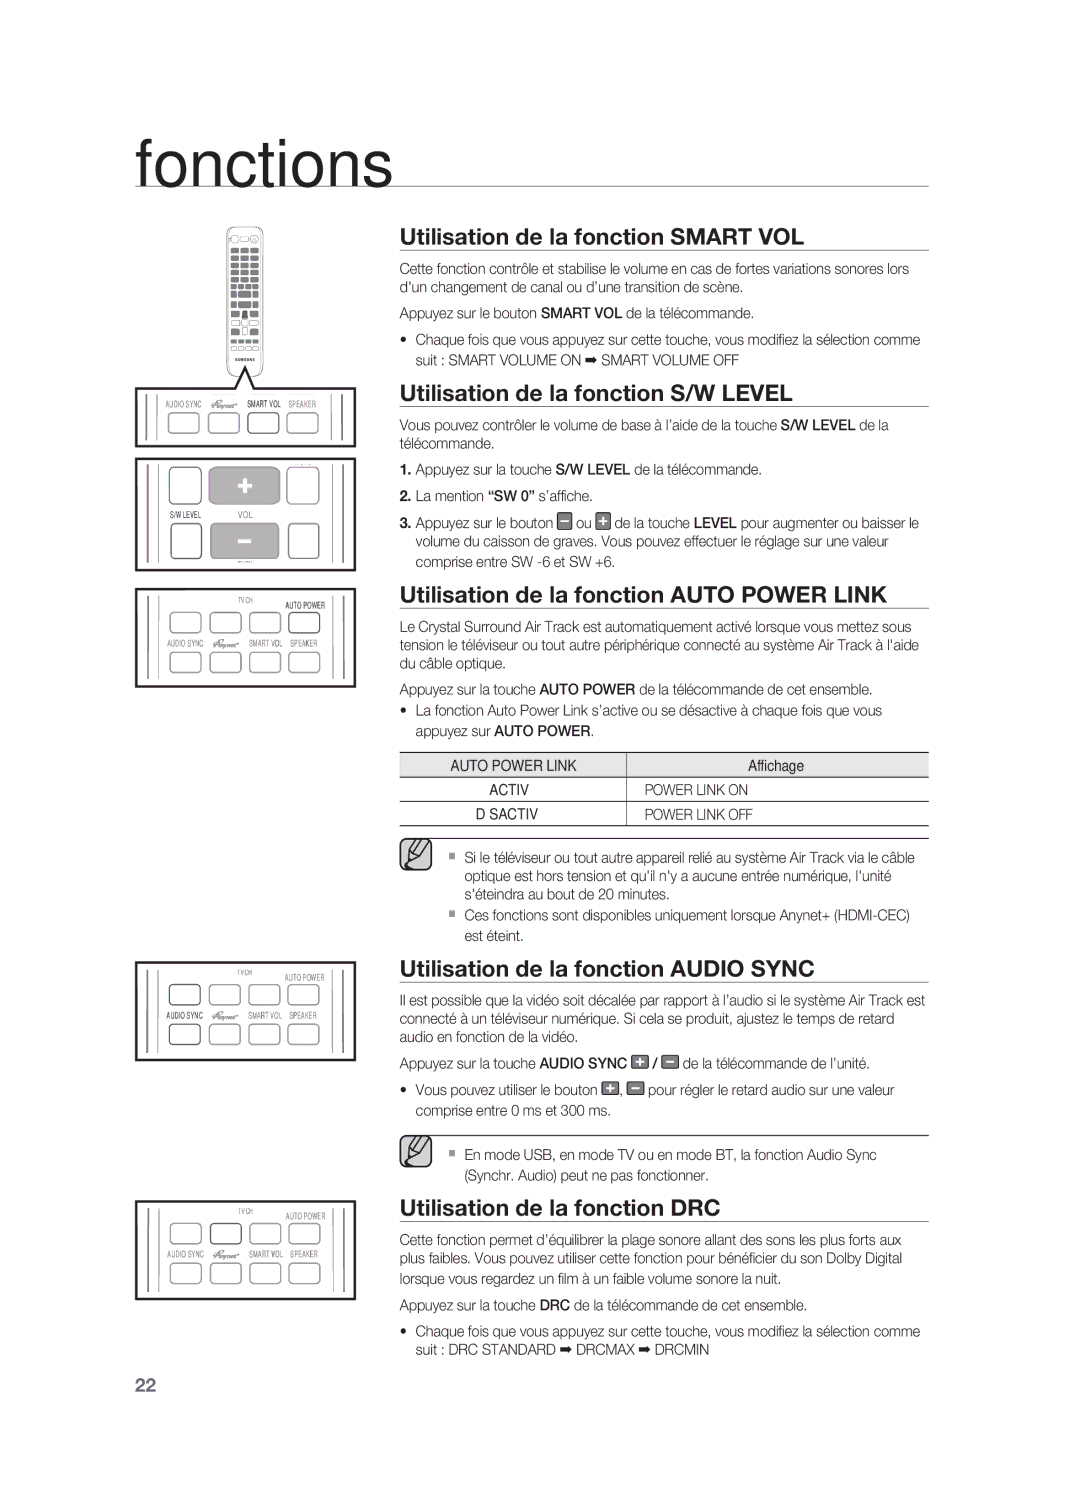 Samsung HW-F850/ZF manual Utilisation de la fonction Smart VOL, Utilisation de la fonction S/W Level 